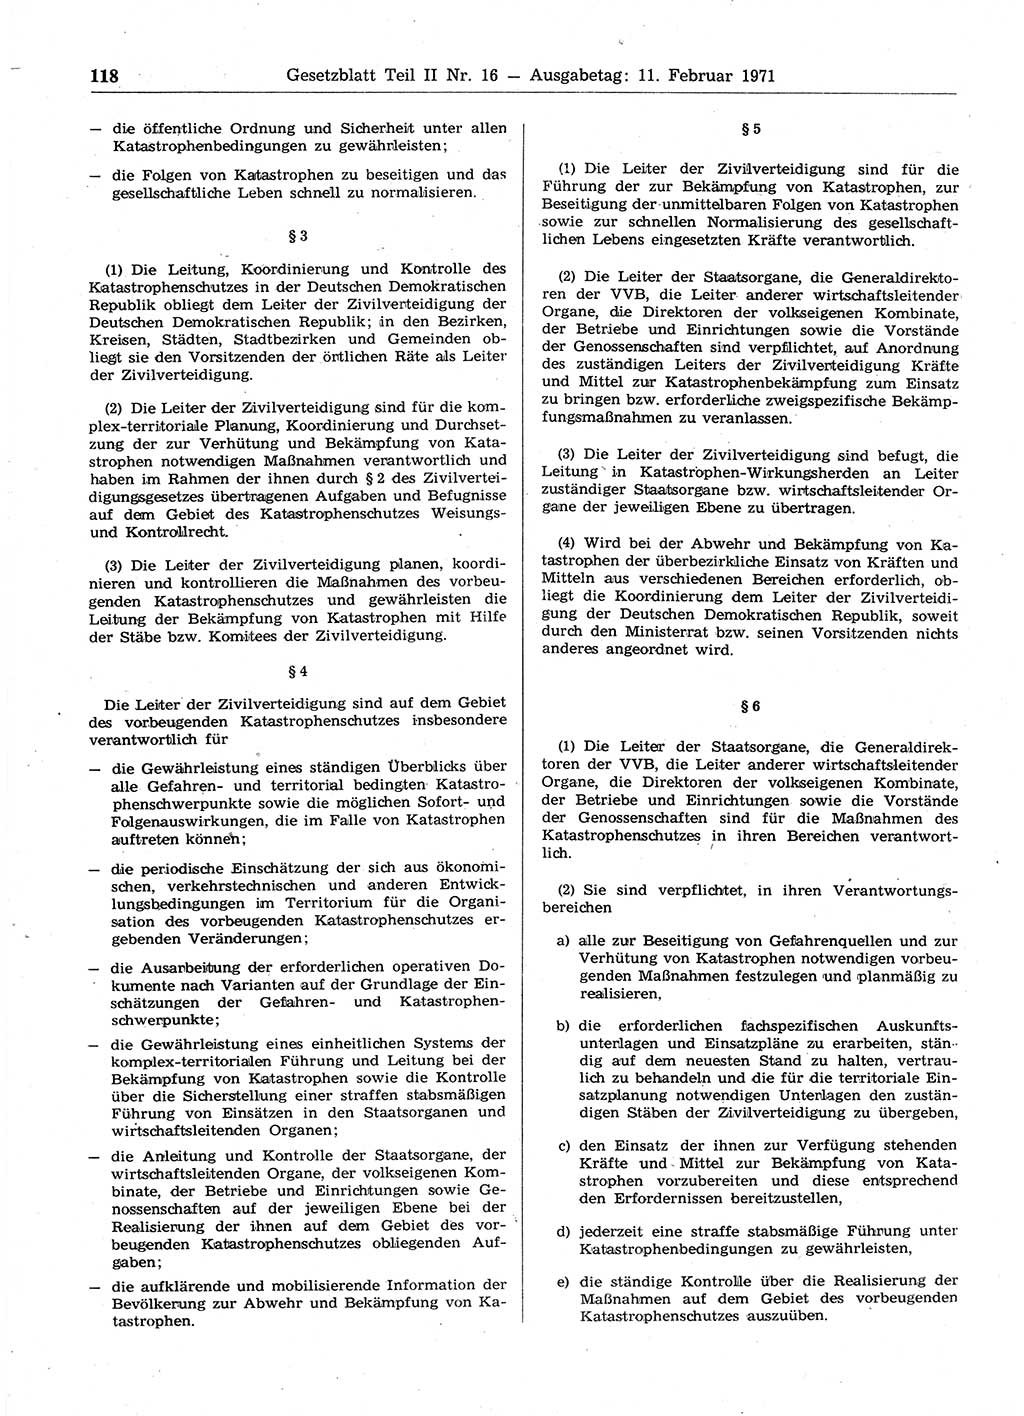 Gesetzblatt (GBl.) der Deutschen Demokratischen Republik (DDR) Teil ⅠⅠ 1971, Seite 118 (GBl. DDR ⅠⅠ 1971, S. 118)